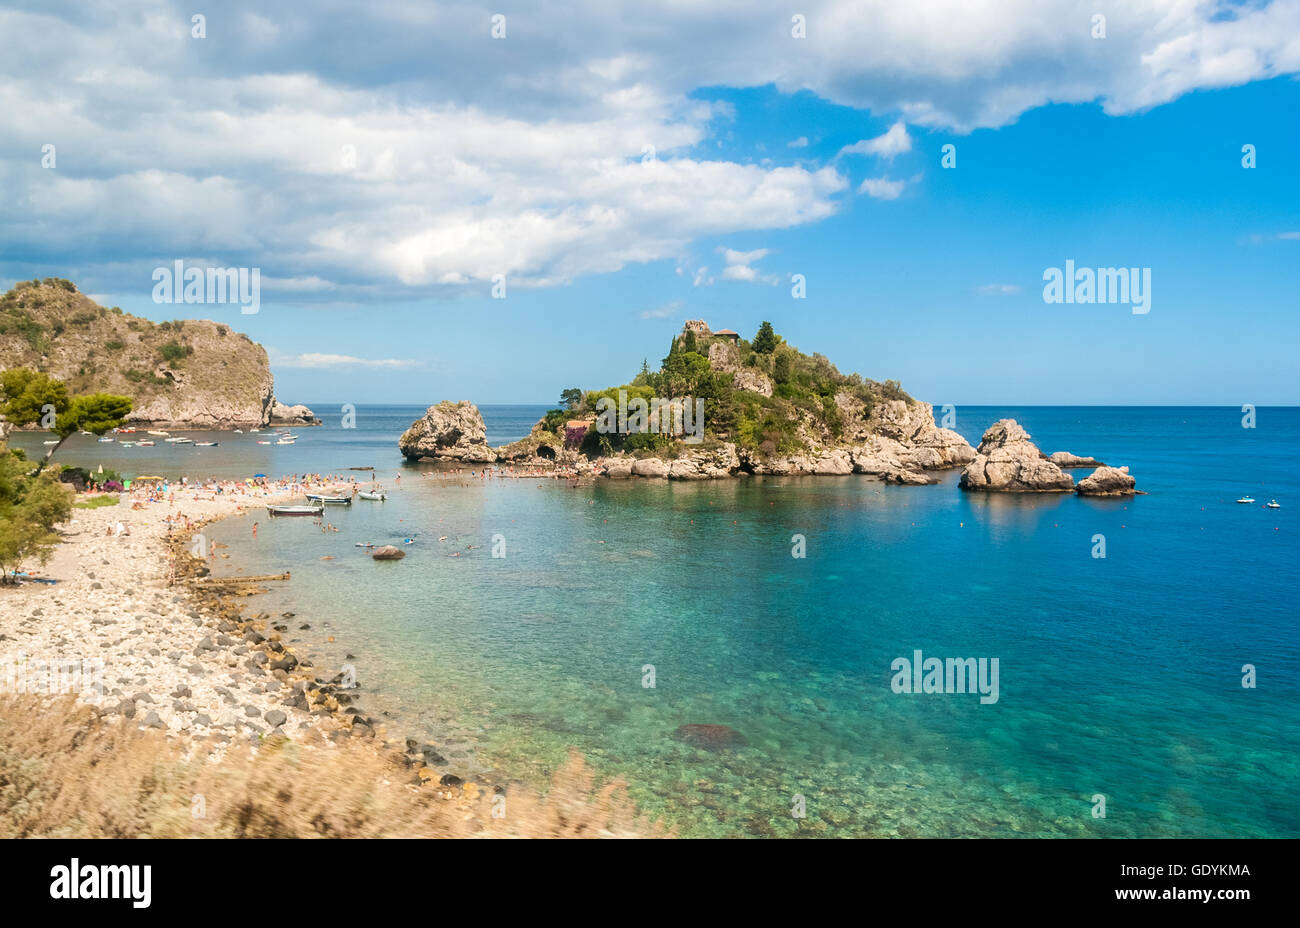 Isola Bella, à Taormina (Sicile), au cours de l'été Banque D'Images